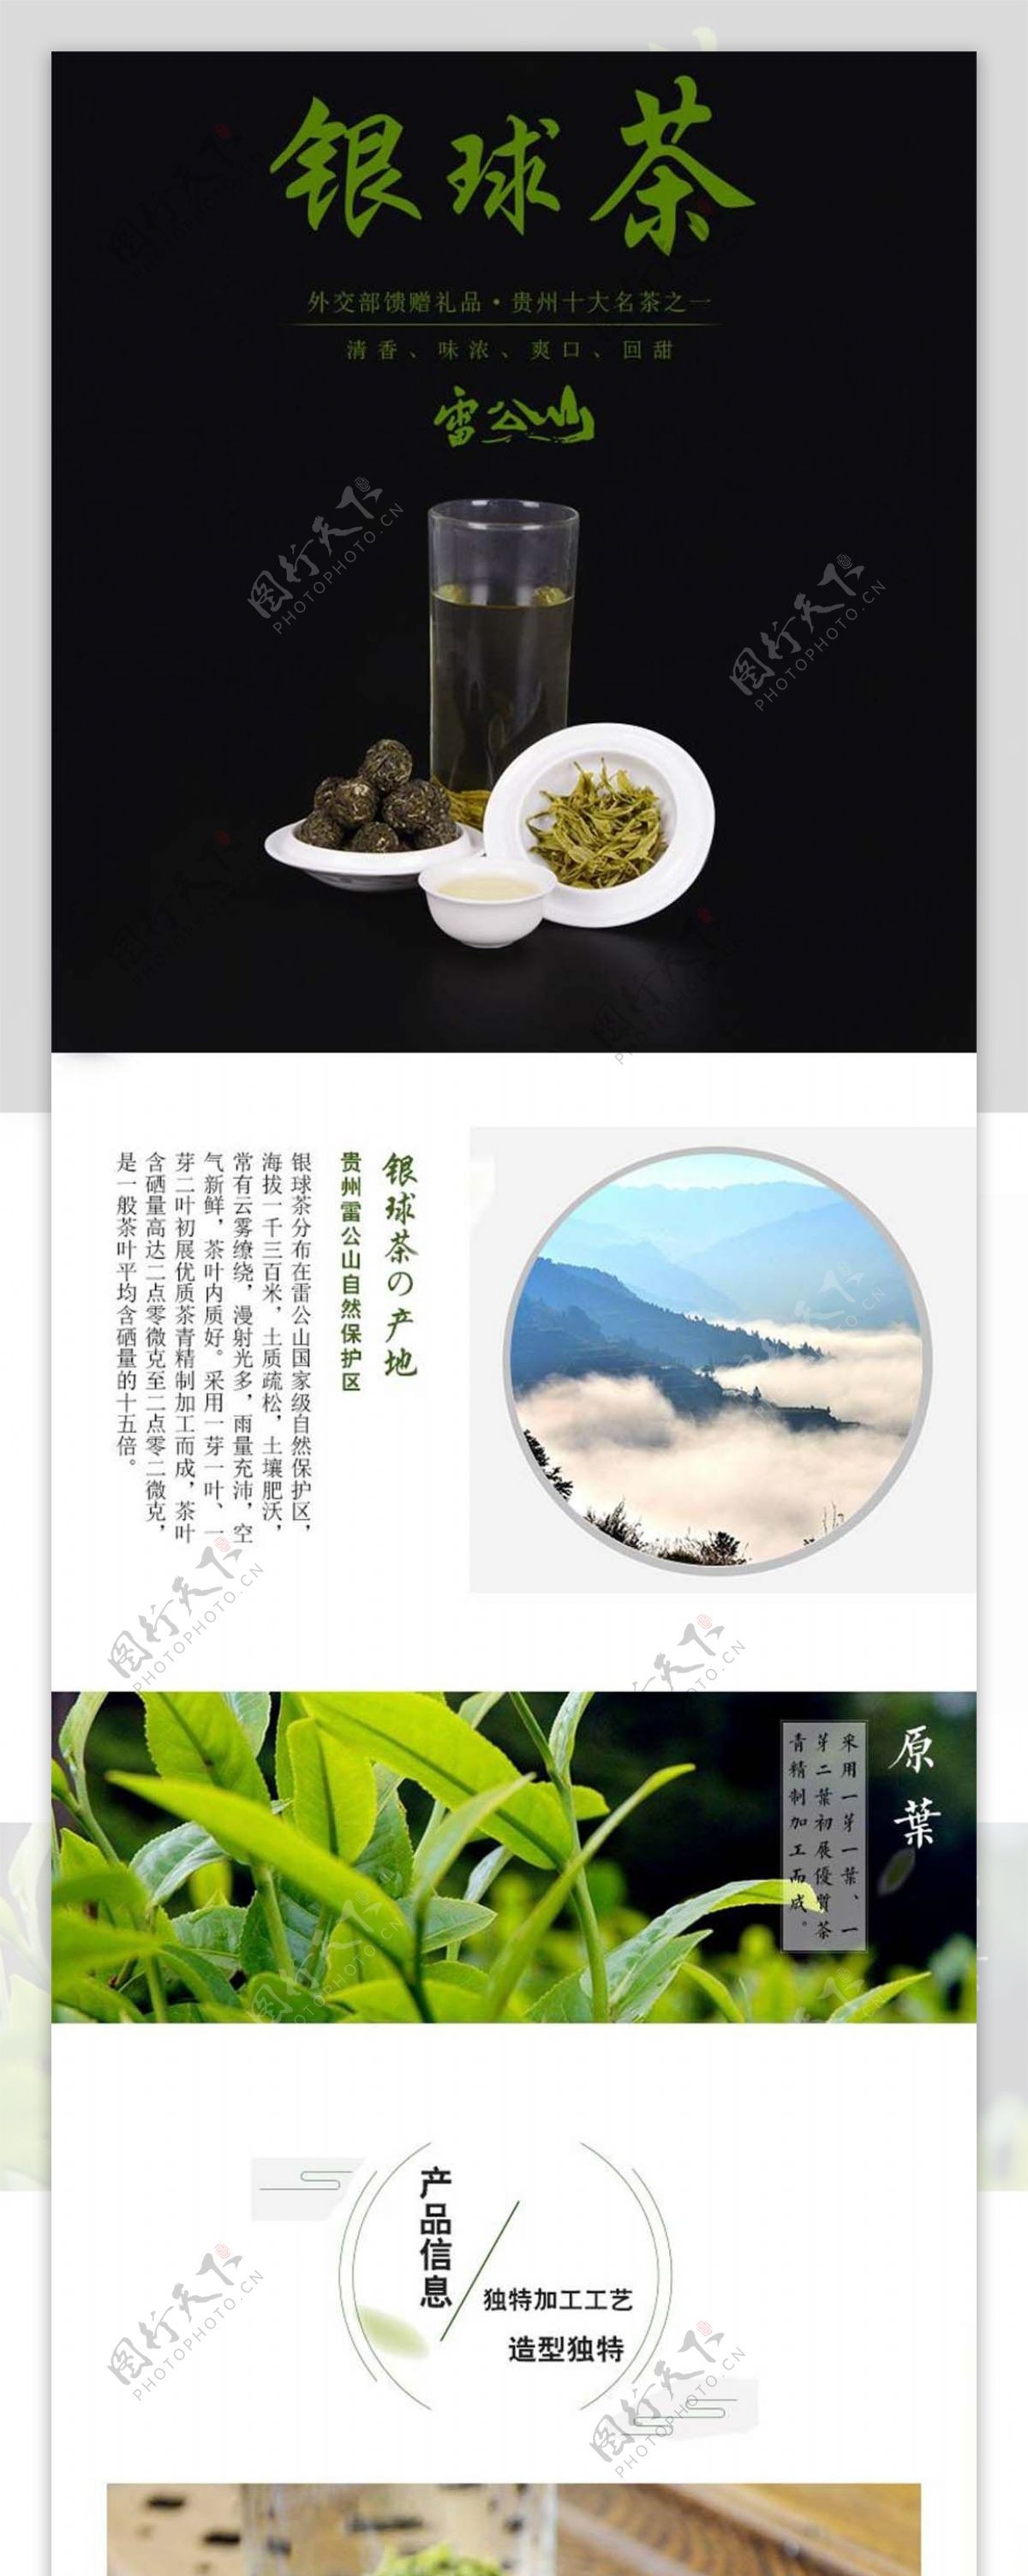 银球茶淘宝详情页